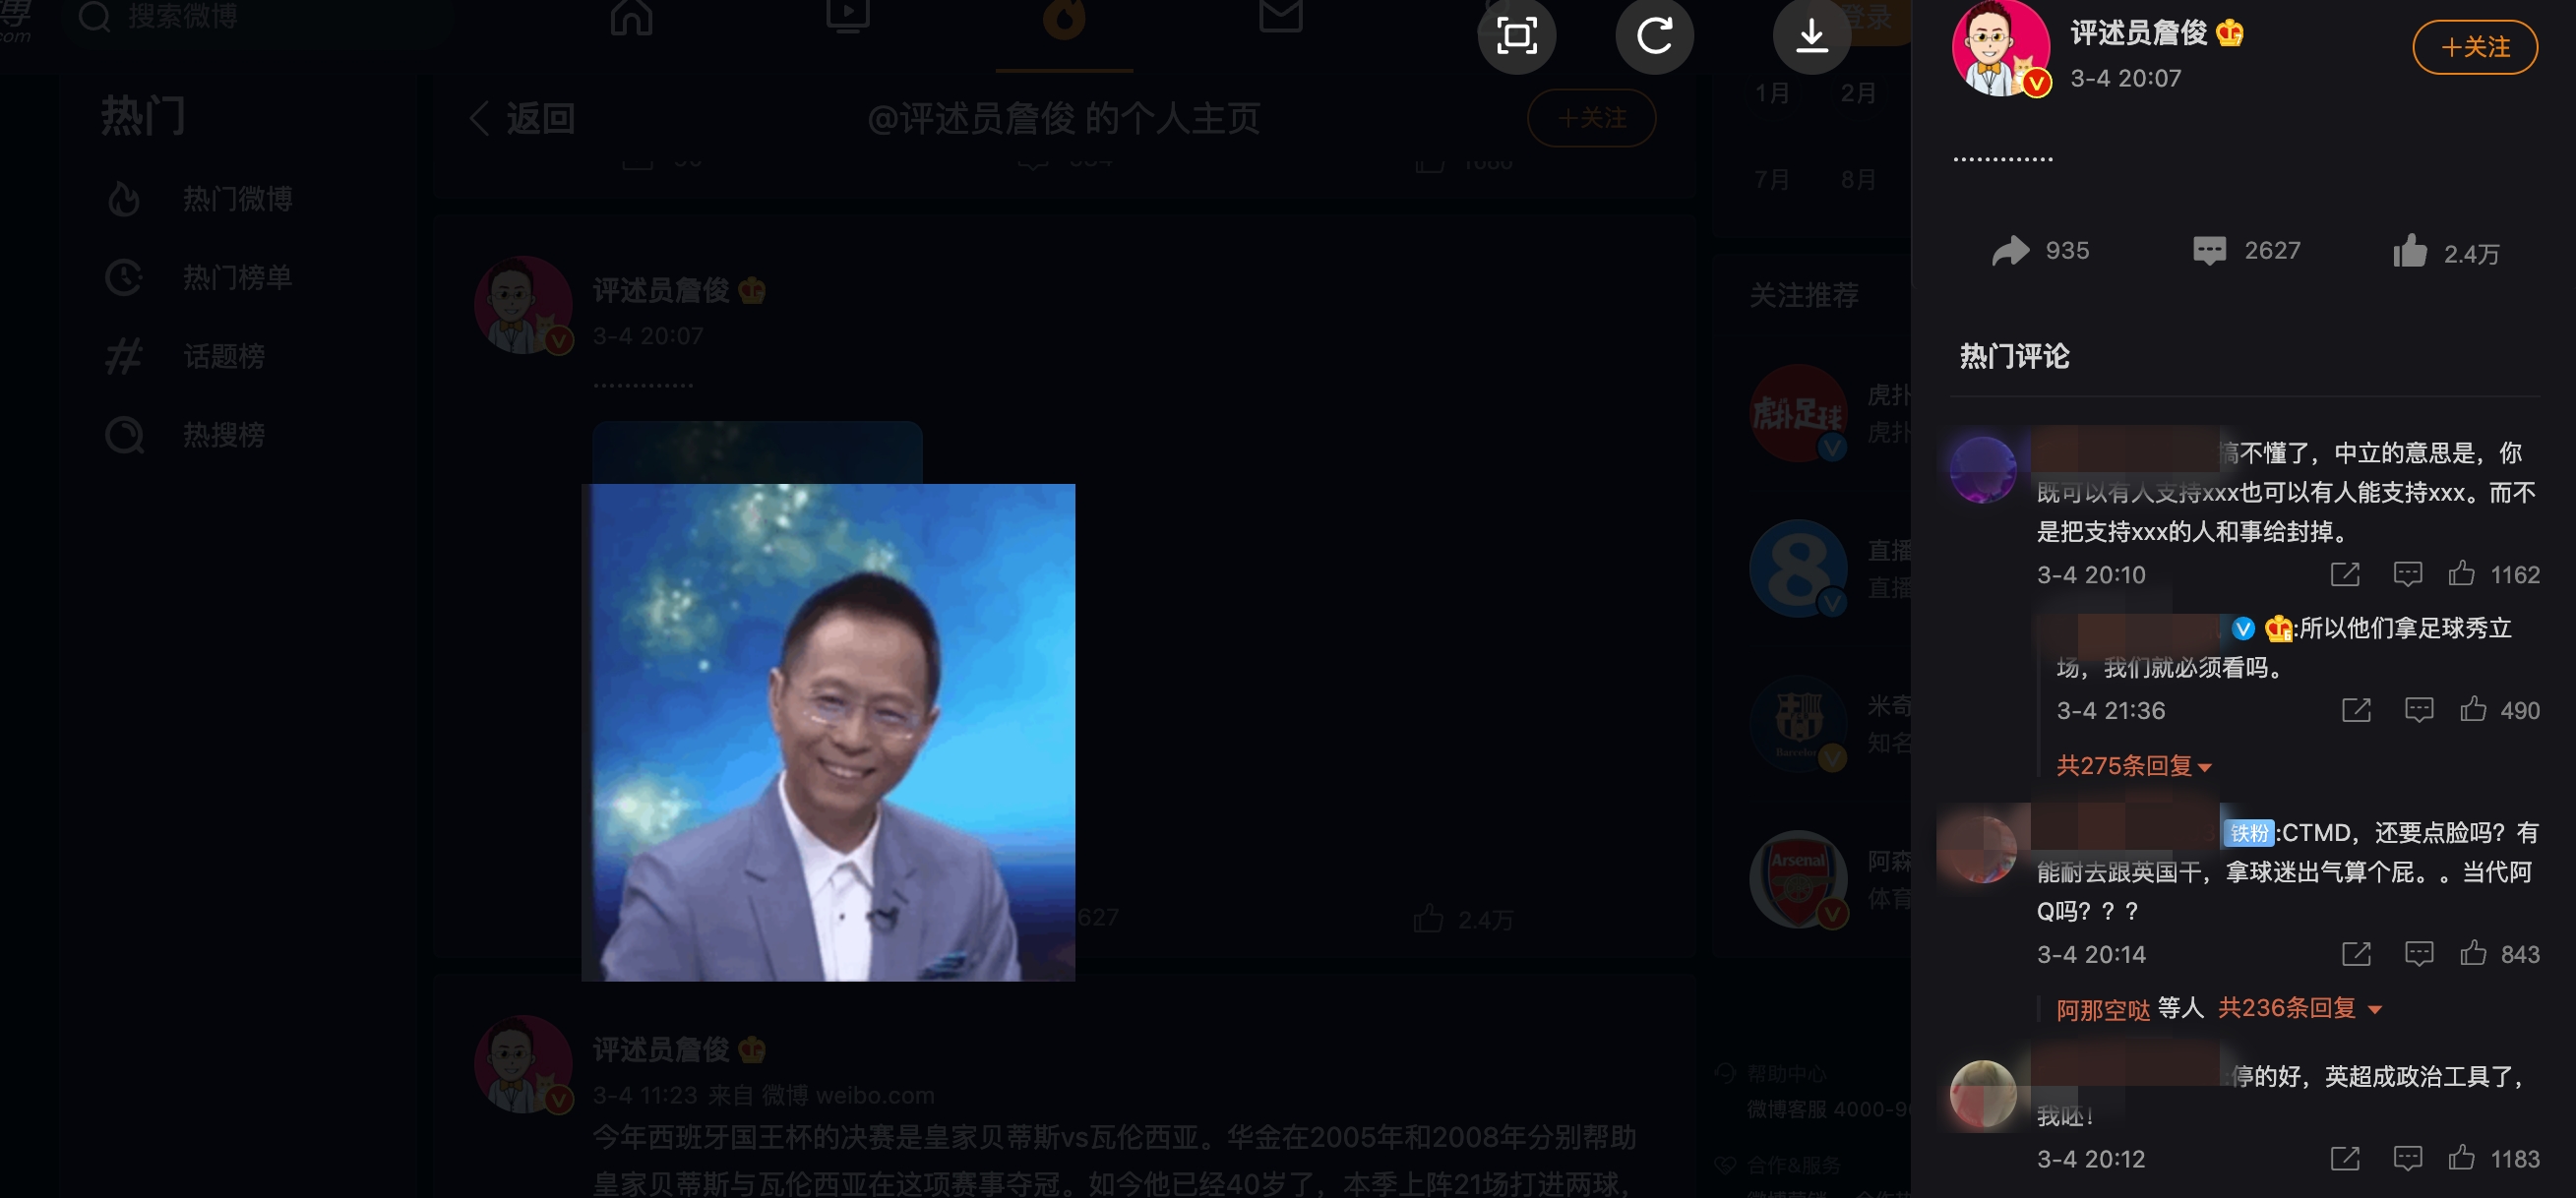 中國知名足球運動主播詹俊也在微博分享一張搖頭的動畫，並搭配「.............」的評論，讓不少人懷疑是在對禁播一事表達無奈與不滿。